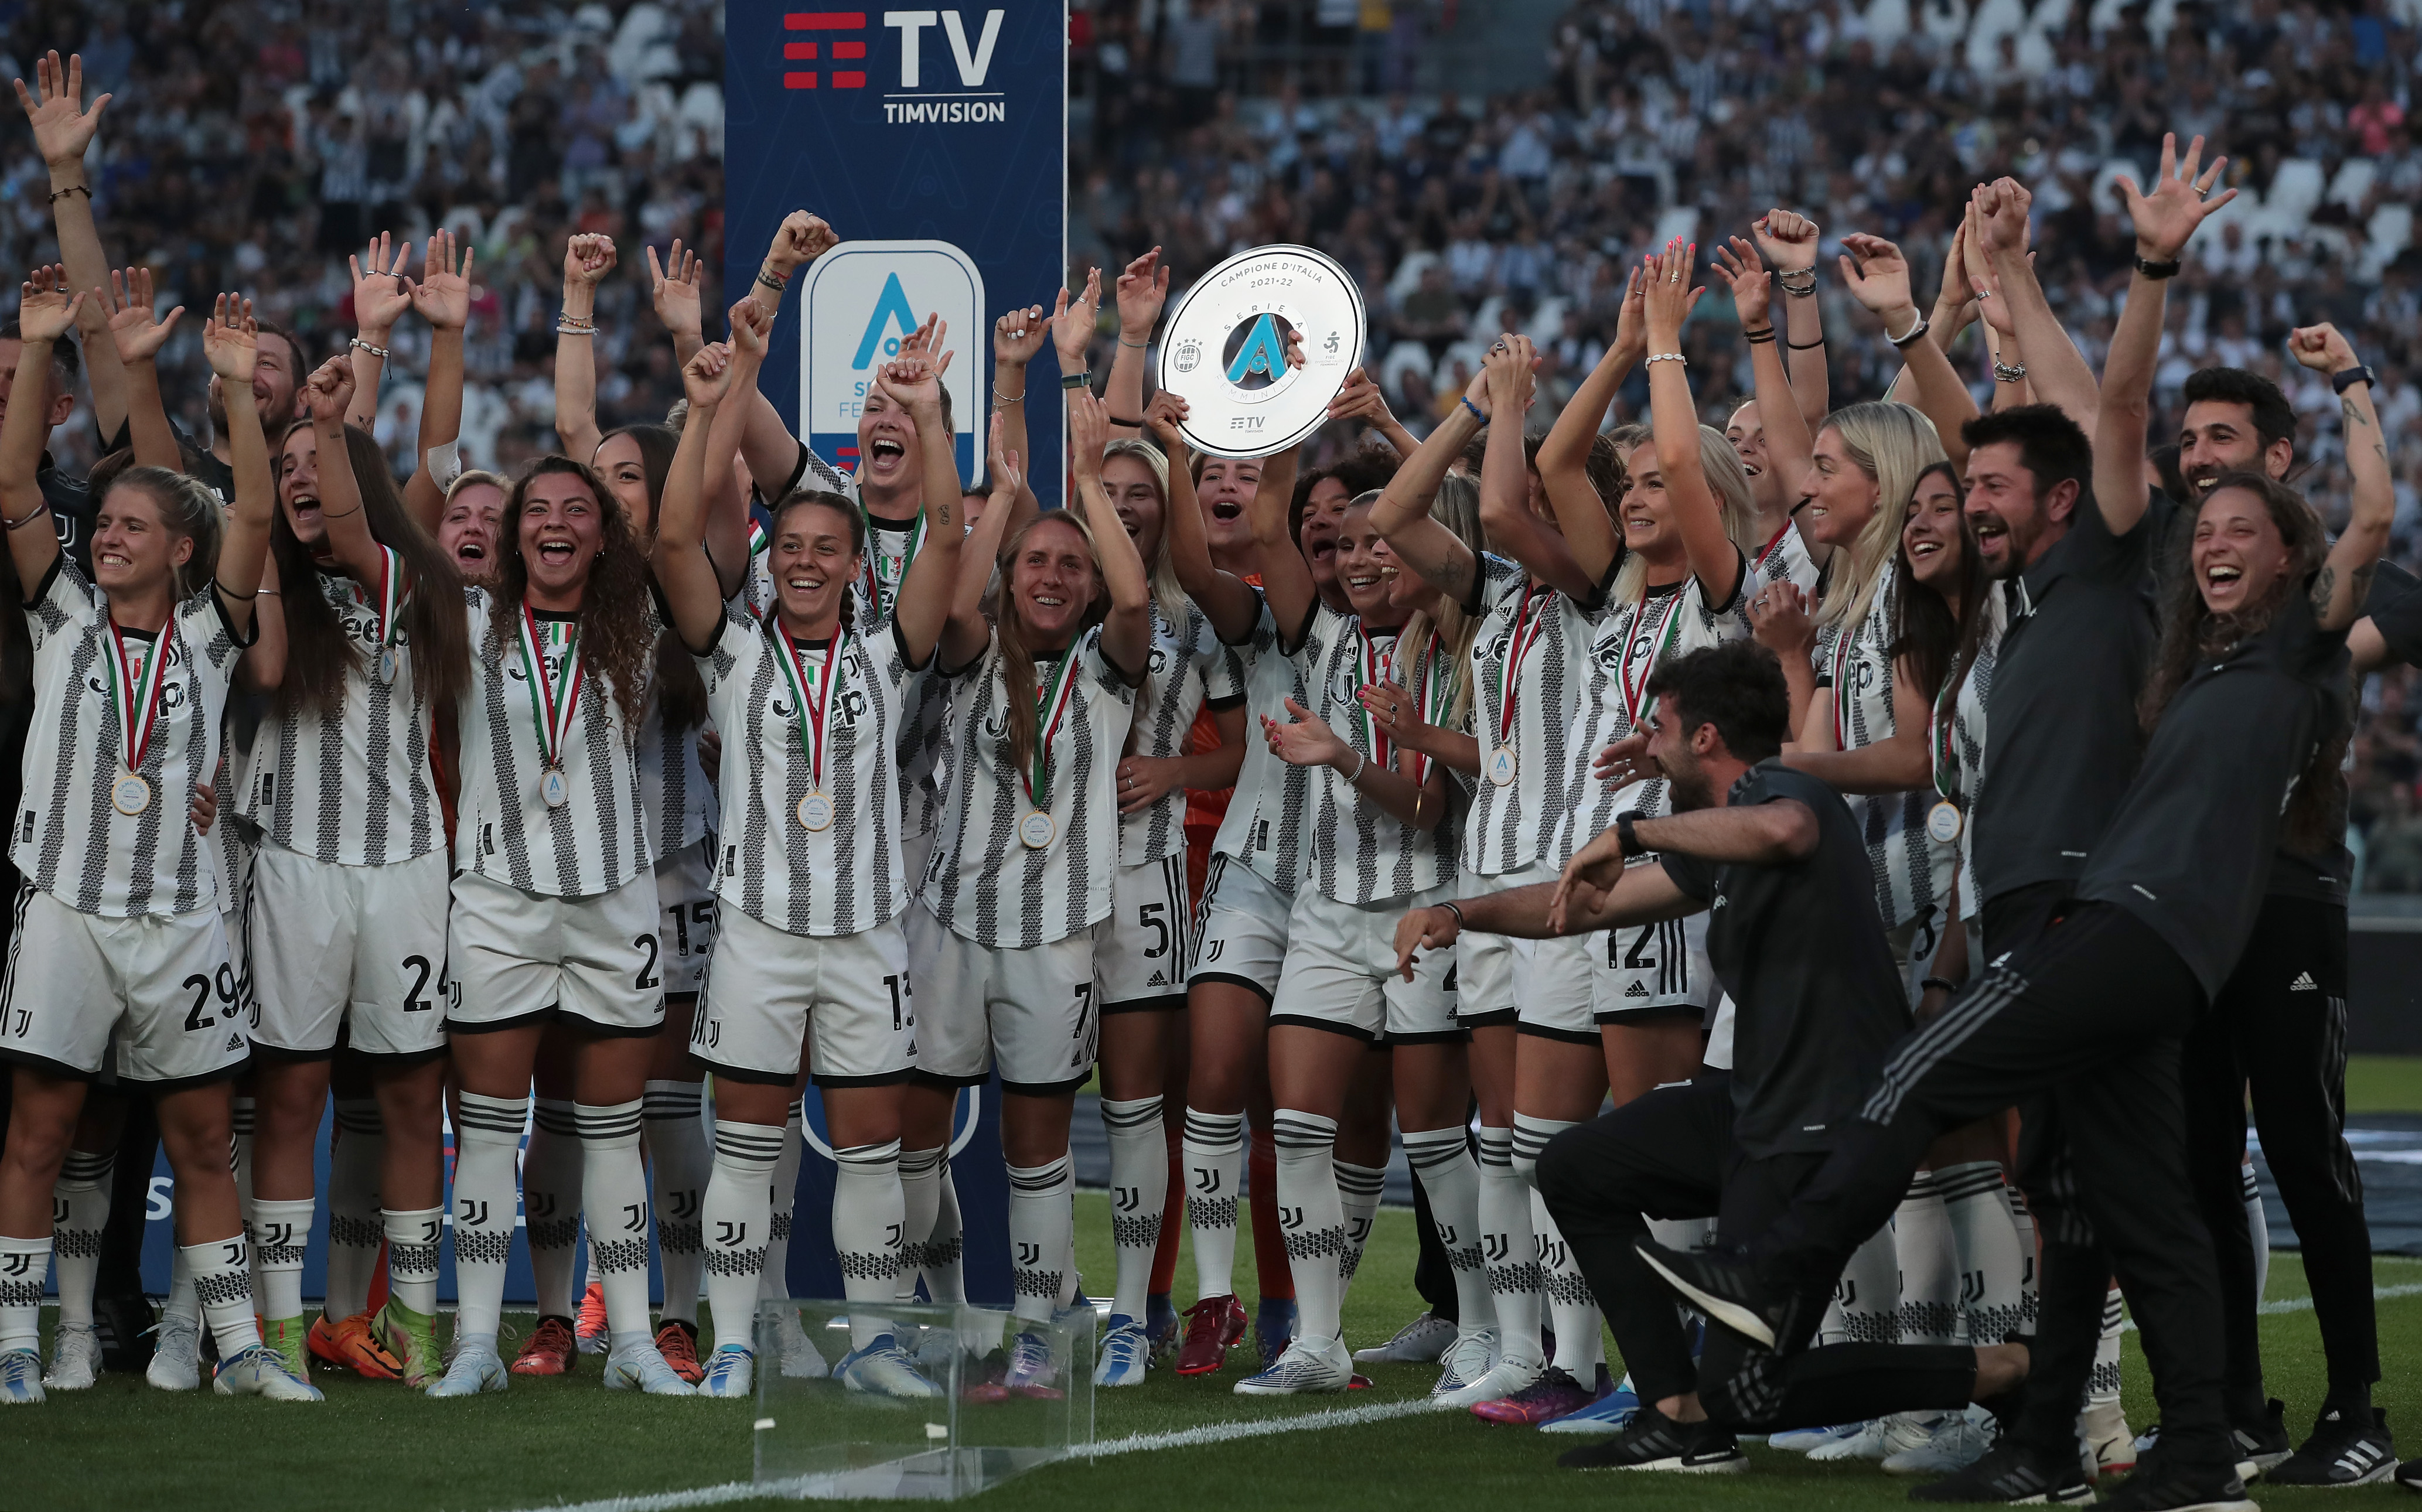 Juventus premiata allo 'Stadium' per la vittoria del campionato. Gravina:  “Un traguardo storico”